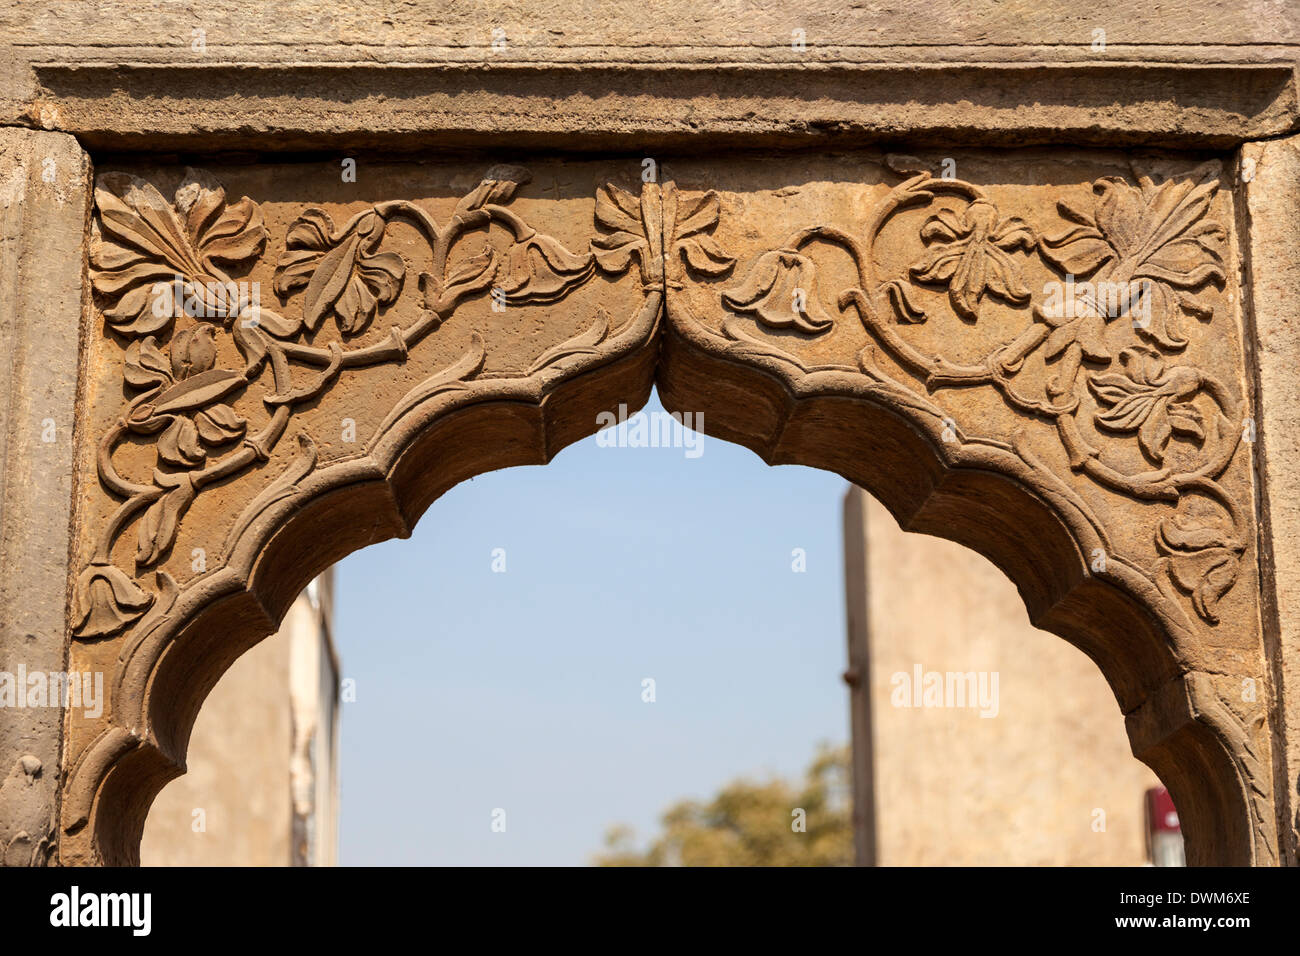 Arche de pierre sculptée sur la sortie de la Chand Baori Abhaneri étape bien, Village, Rajasthan, Inde. Construit 800-900A.D. Banque D'Images